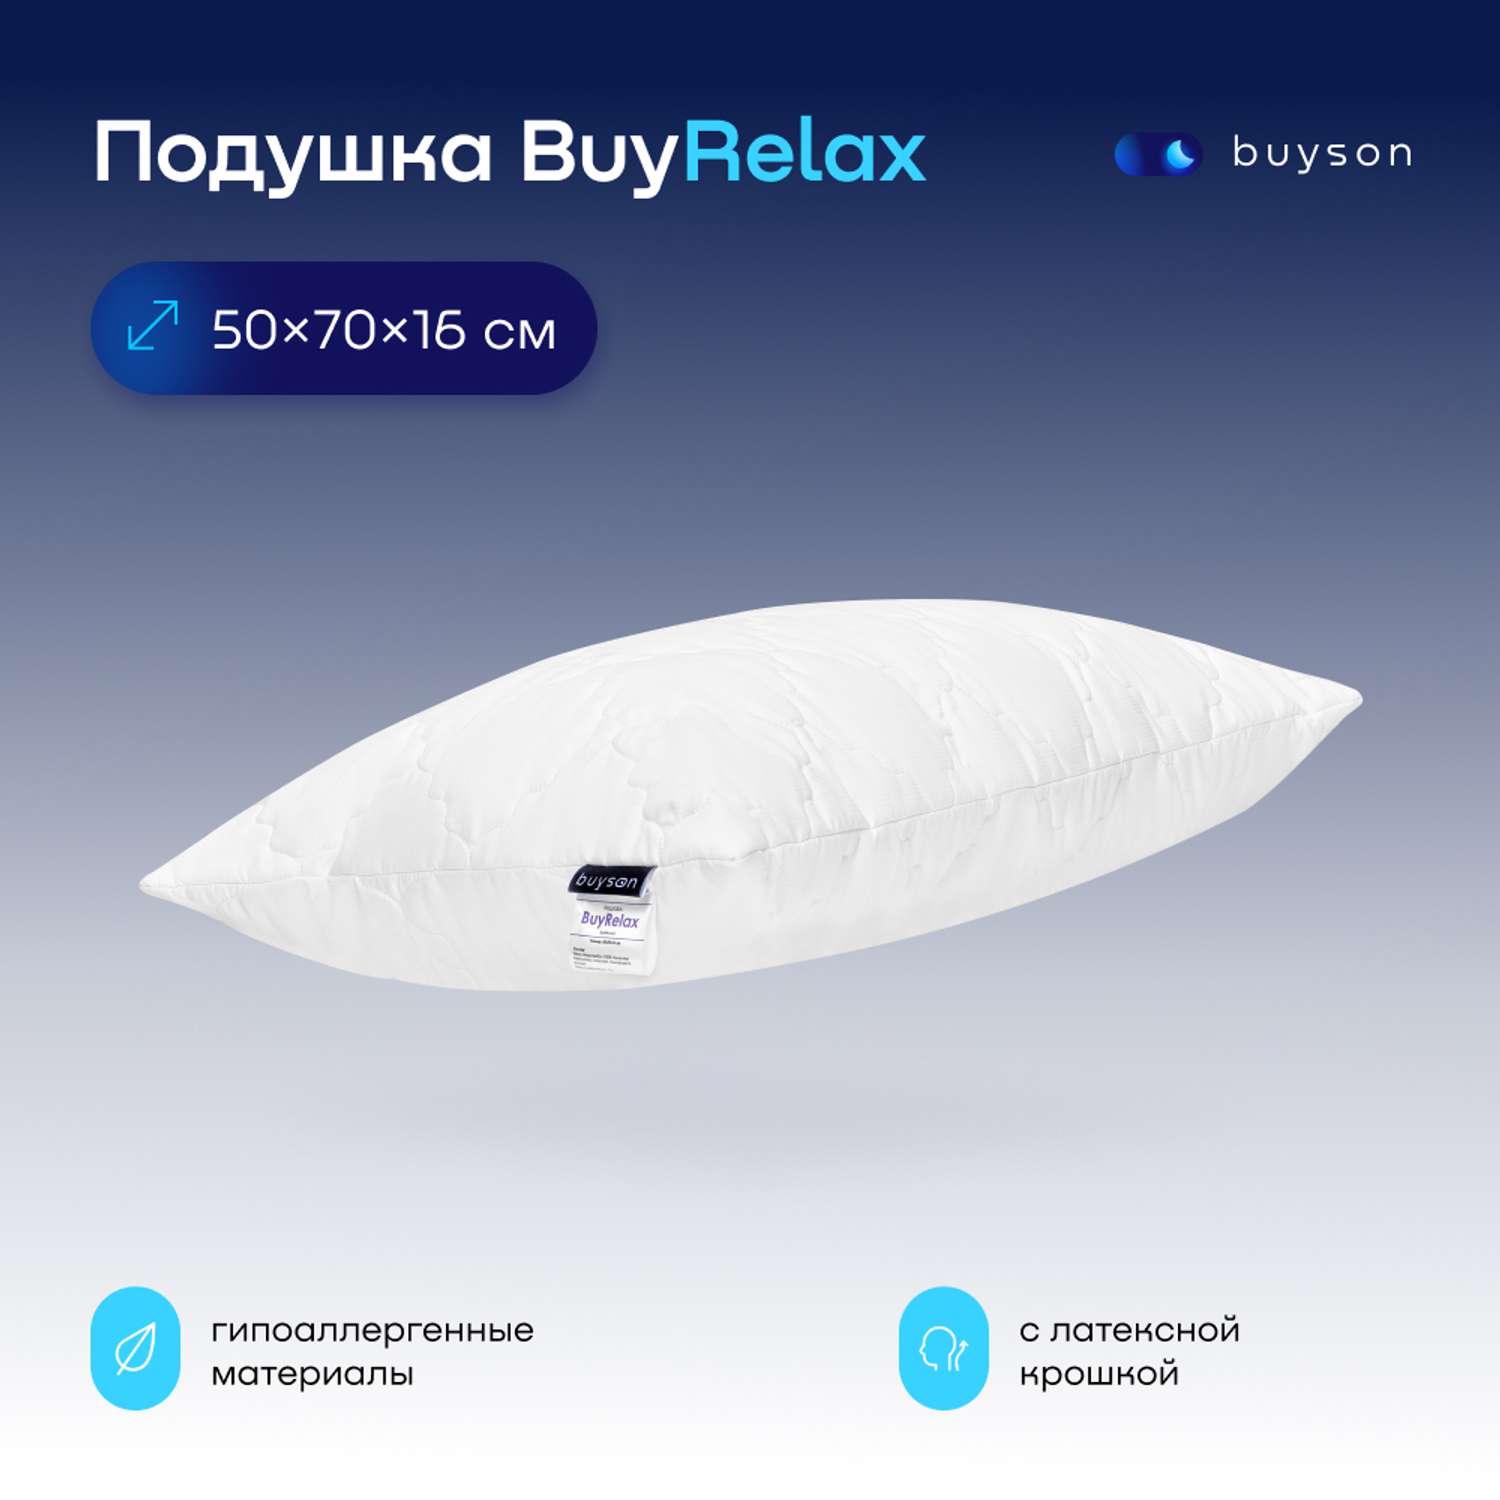 Анатомическая набивная подушка buyson BuyRelax 50х70 см высота 16 см - фото 1